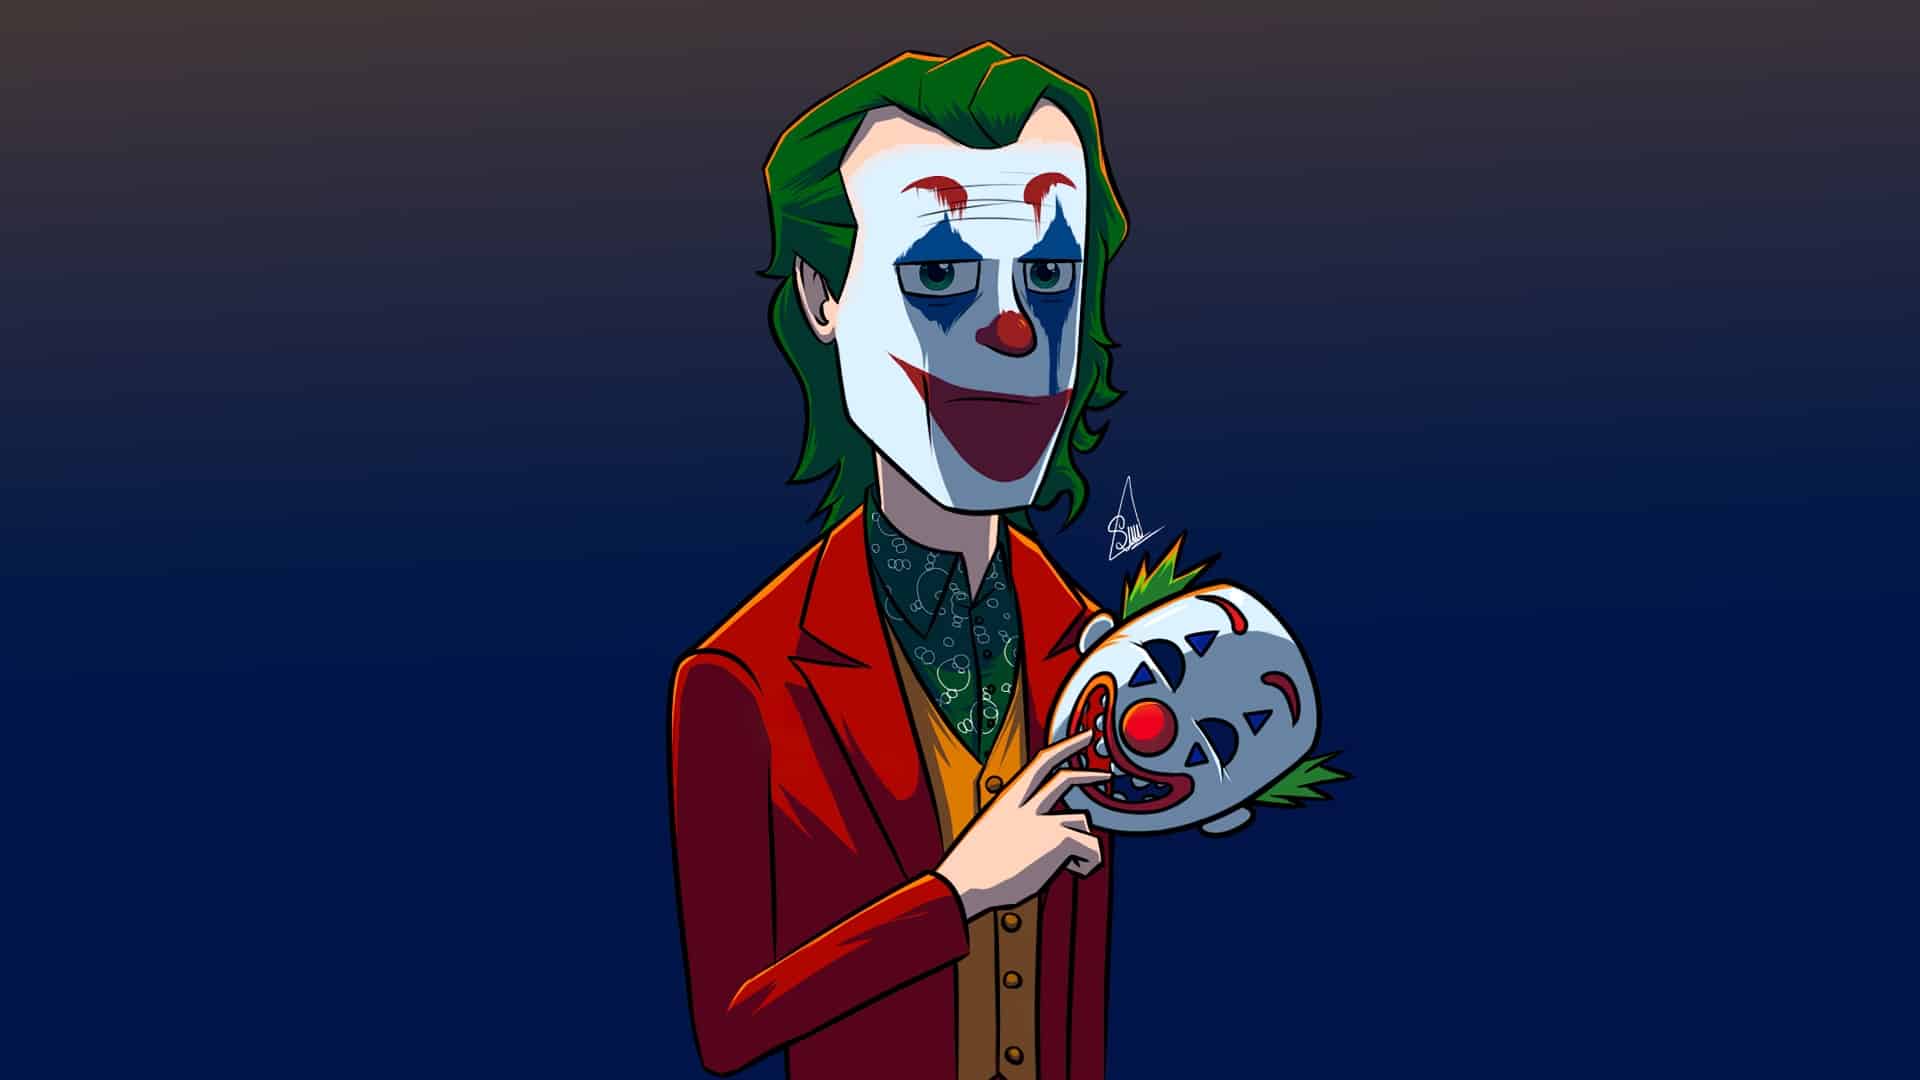 Ảnh vẽ Joker ngầu và hài hước.